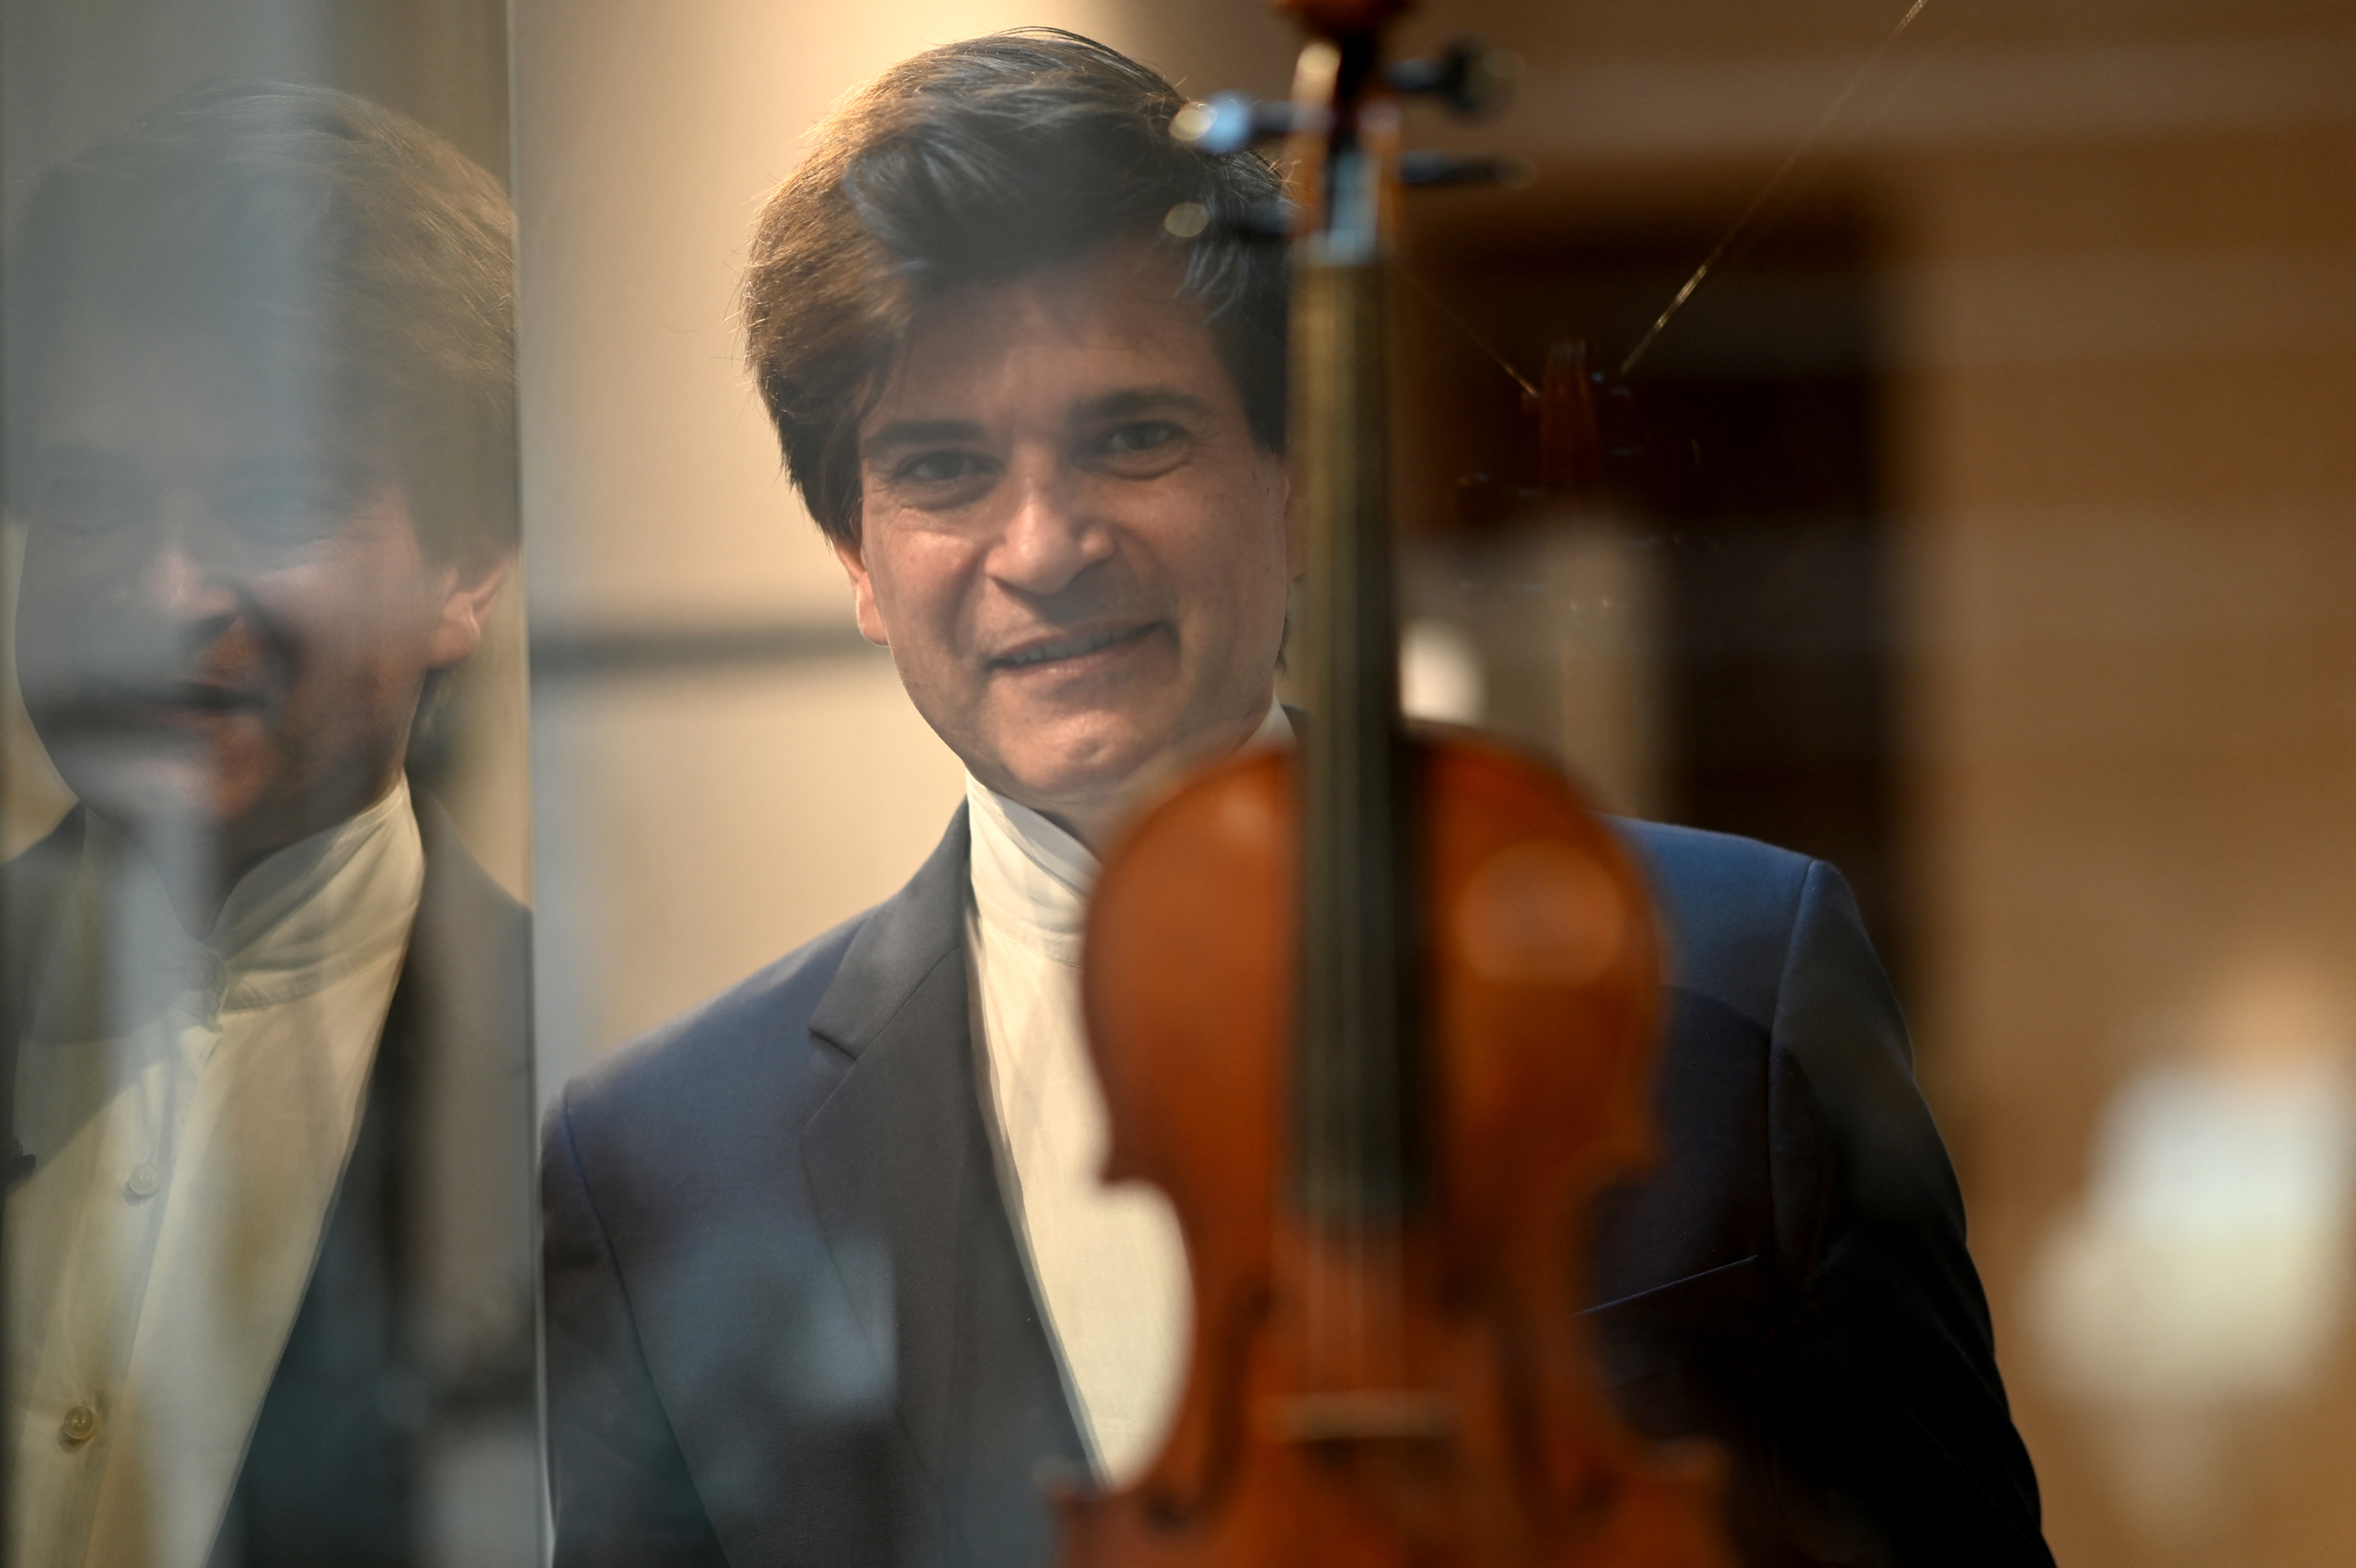 Hôm 04/07/2023, tại Cremona, Ý, sau khi ngôi nhà của nghệ nhân Stradivari mở cửa trở lại, khách tham quan đã xếp hàng dài bên ngoài ngôi nhà. Nghệ nhân chế tác đàn vĩ cầm nổi tiếng Antonio Stradivari đã từng sống và mở xưởng thiết kế của mình ở đây vào năm 1667. (Ảnh: Gabriel Bouys/AFP)